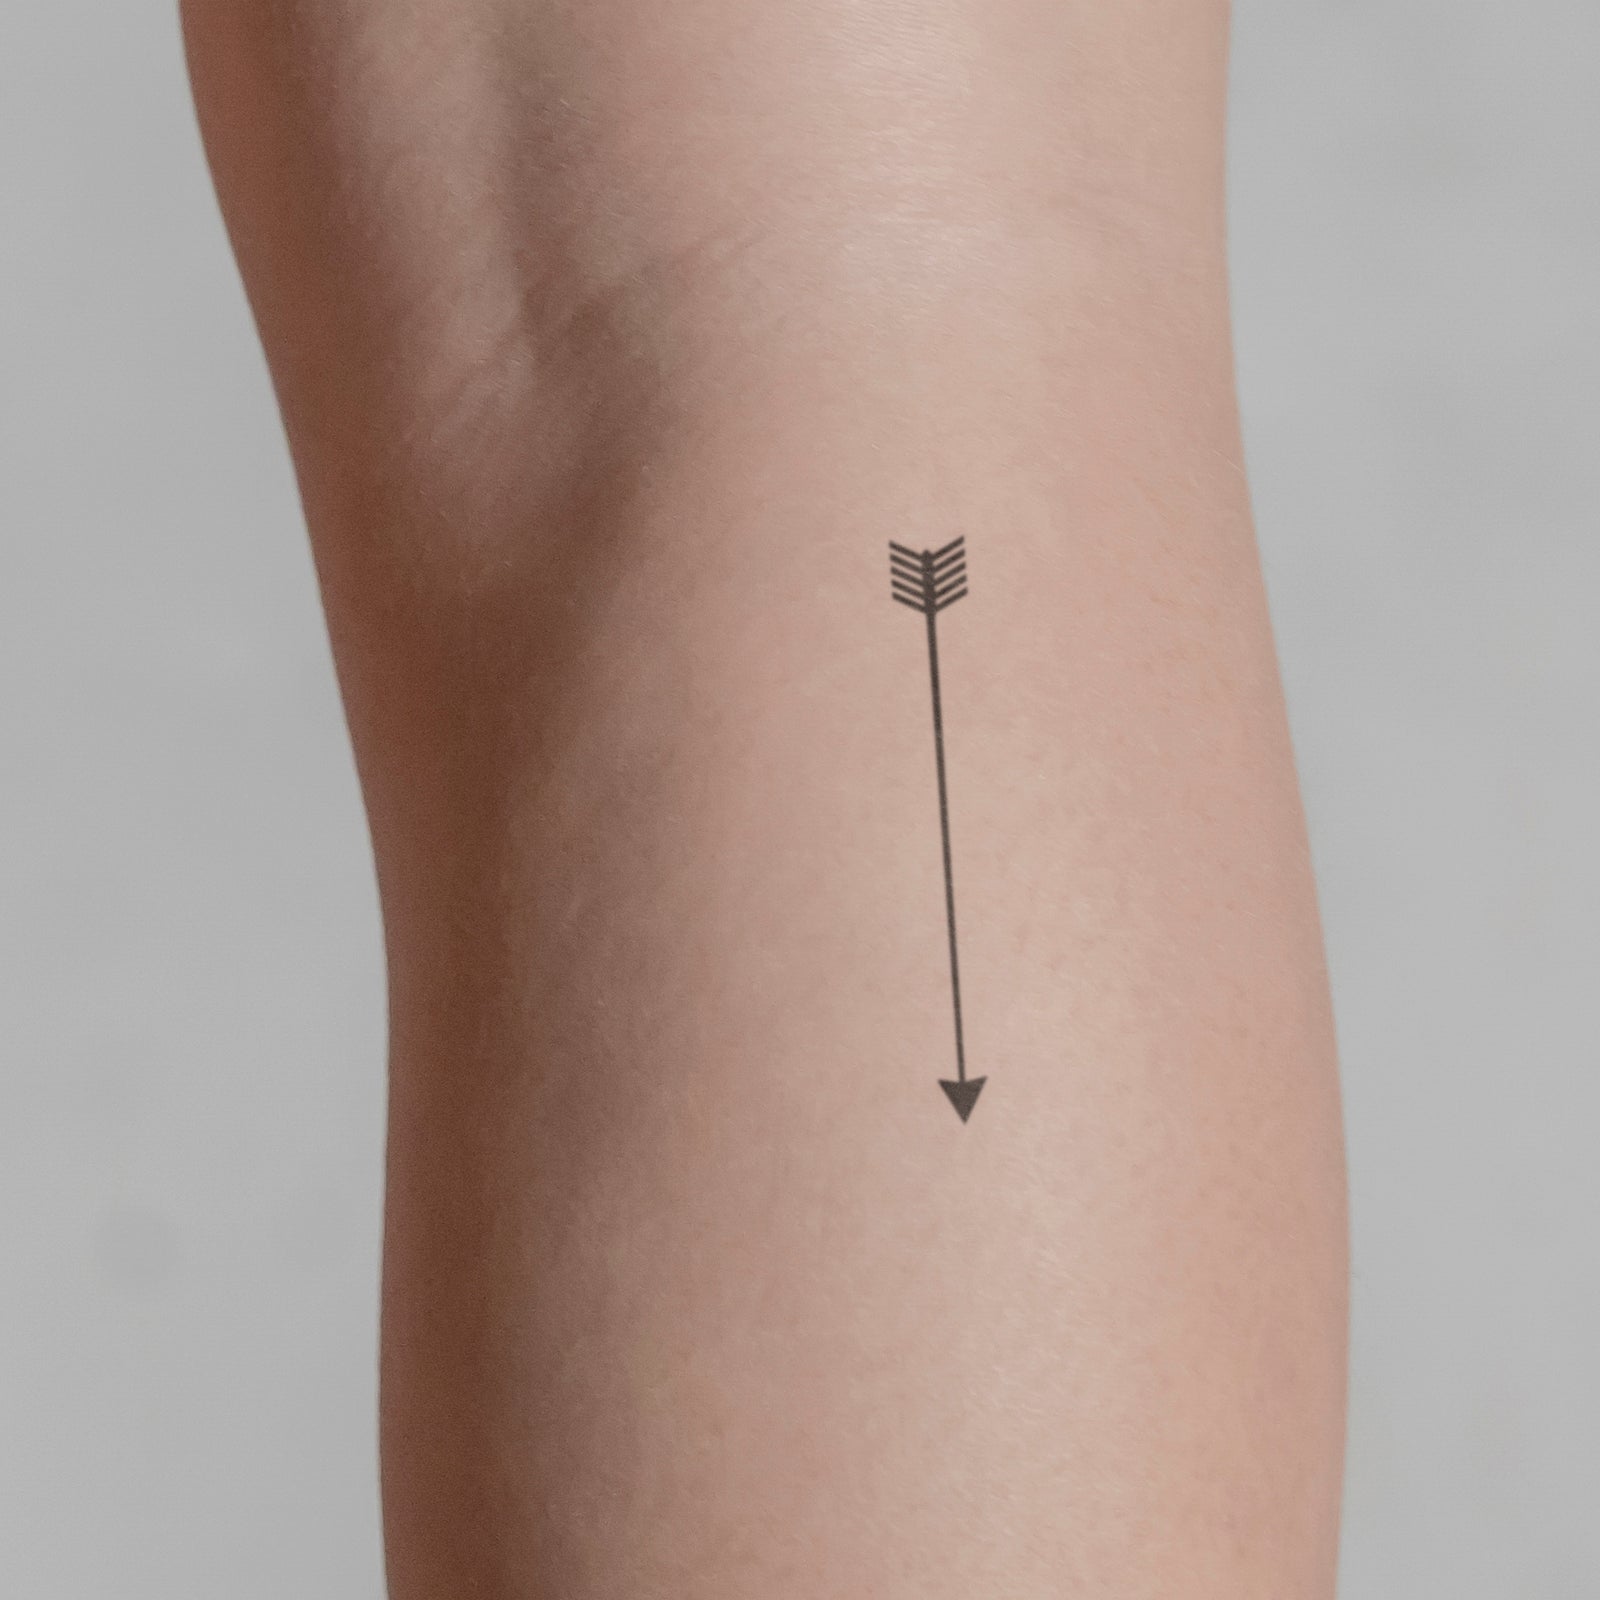 Arrow temporary tattoo